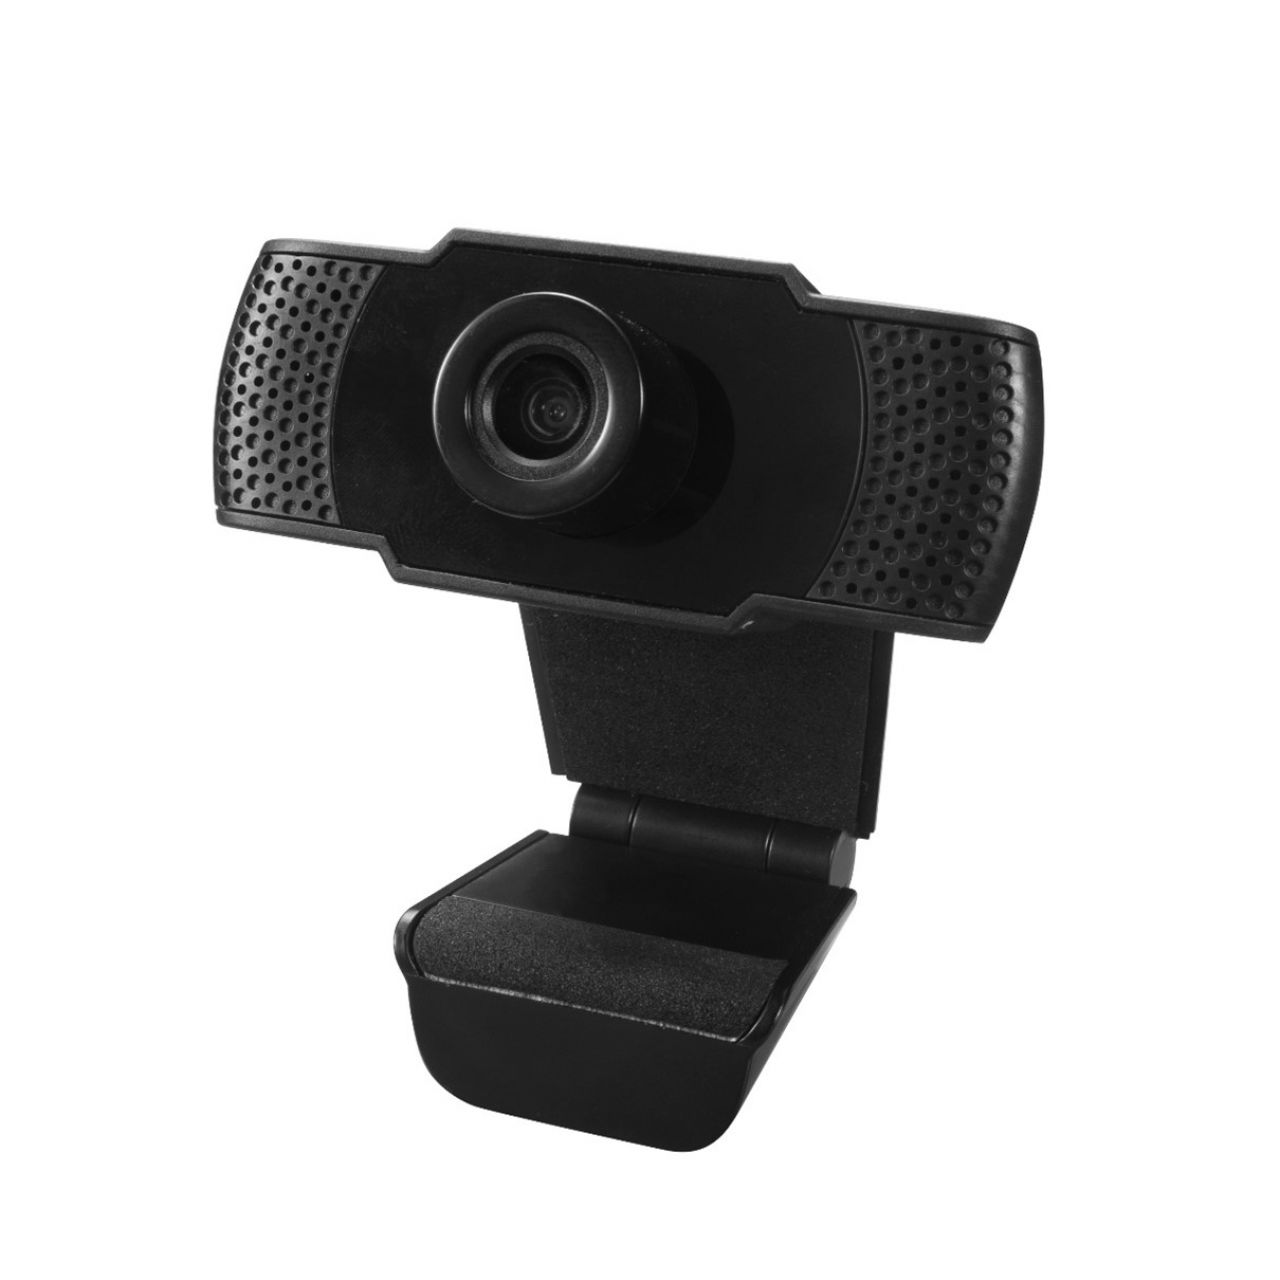 Destacada Webcam FHD Coolbox CW1 1080P USB 2.0 30 FPS ángulo visión 90º Micrófono integrado